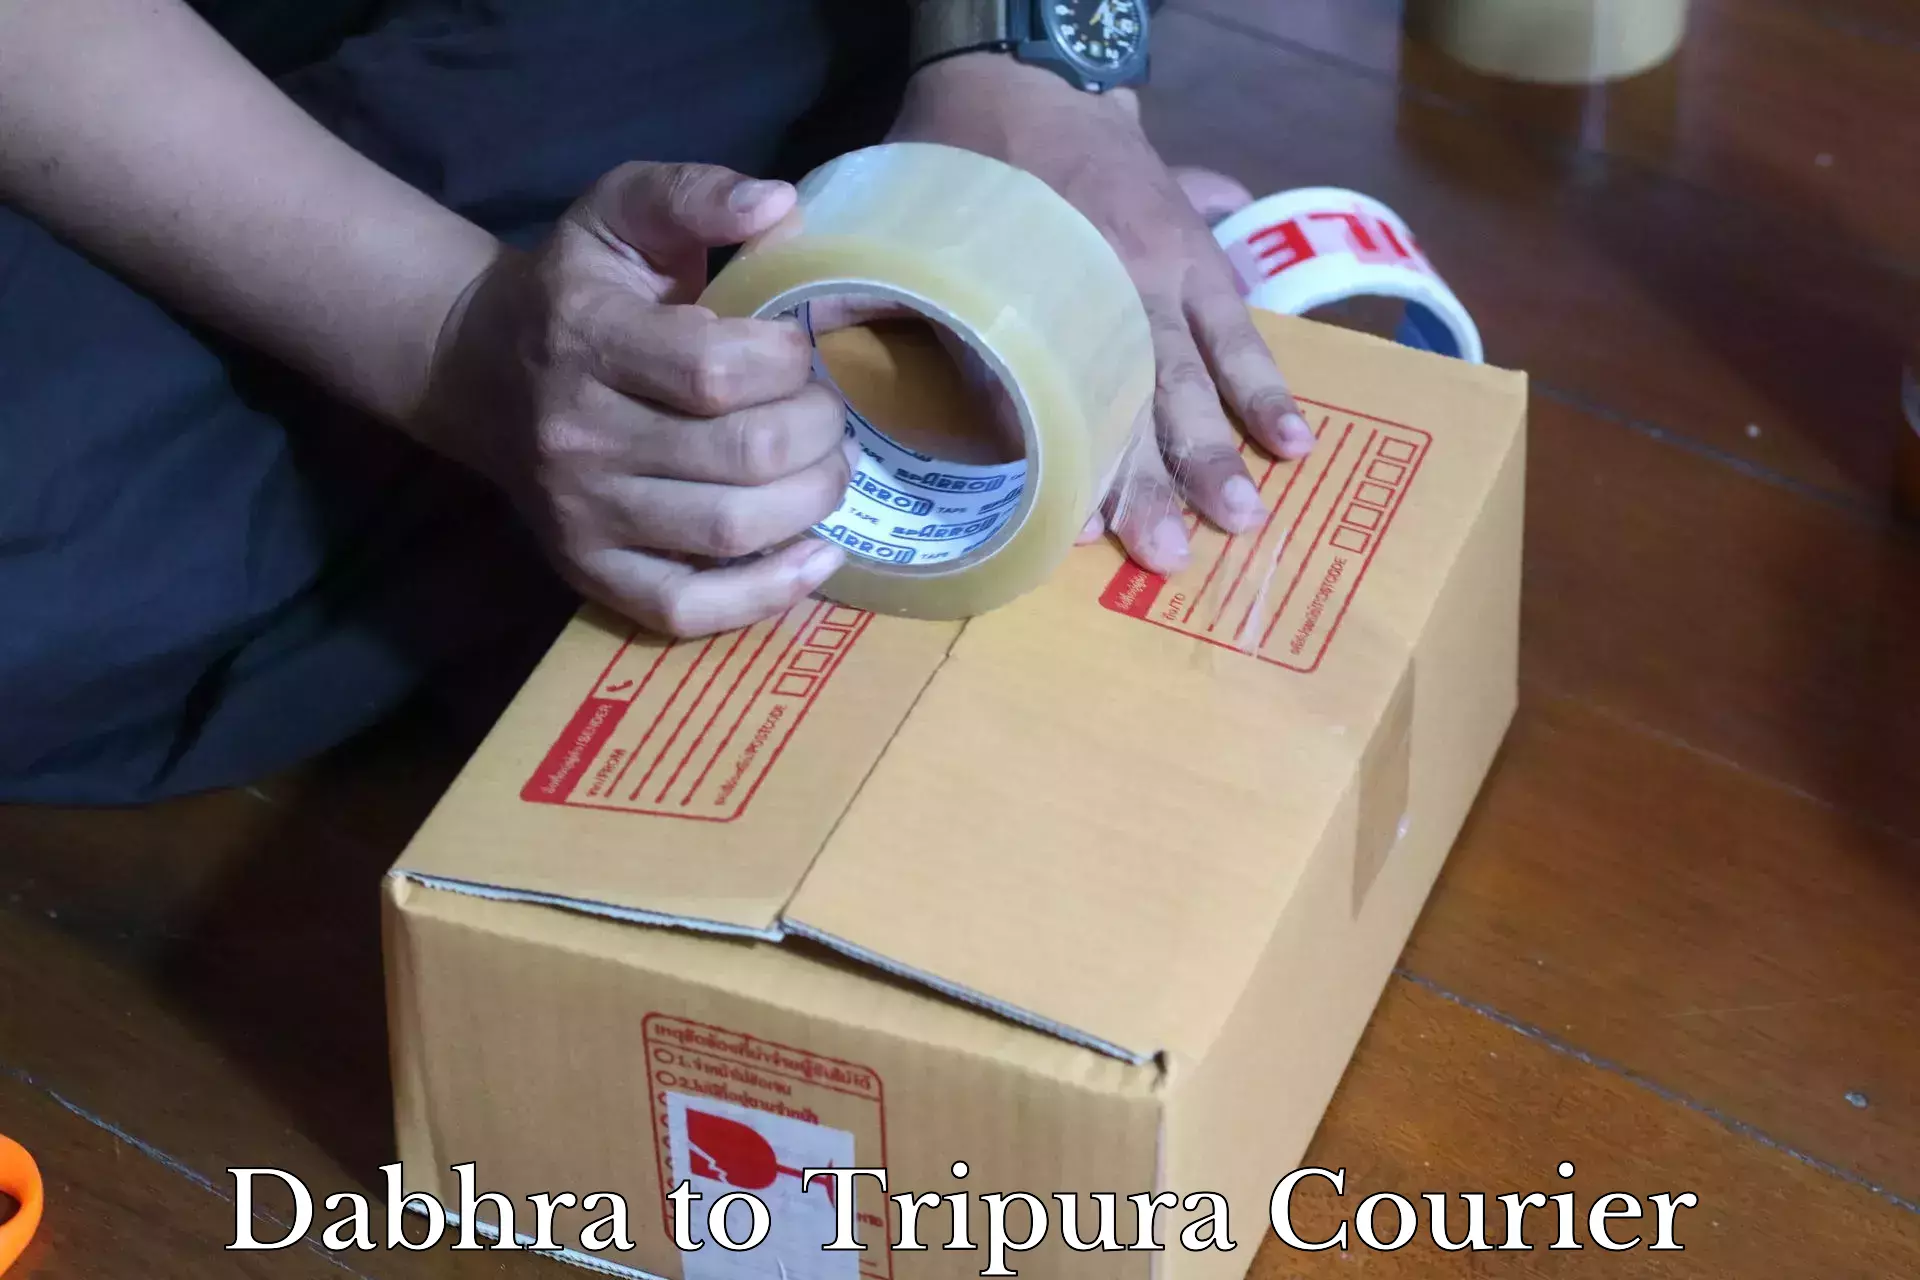 Courier service comparison Dabhra to North Tripura